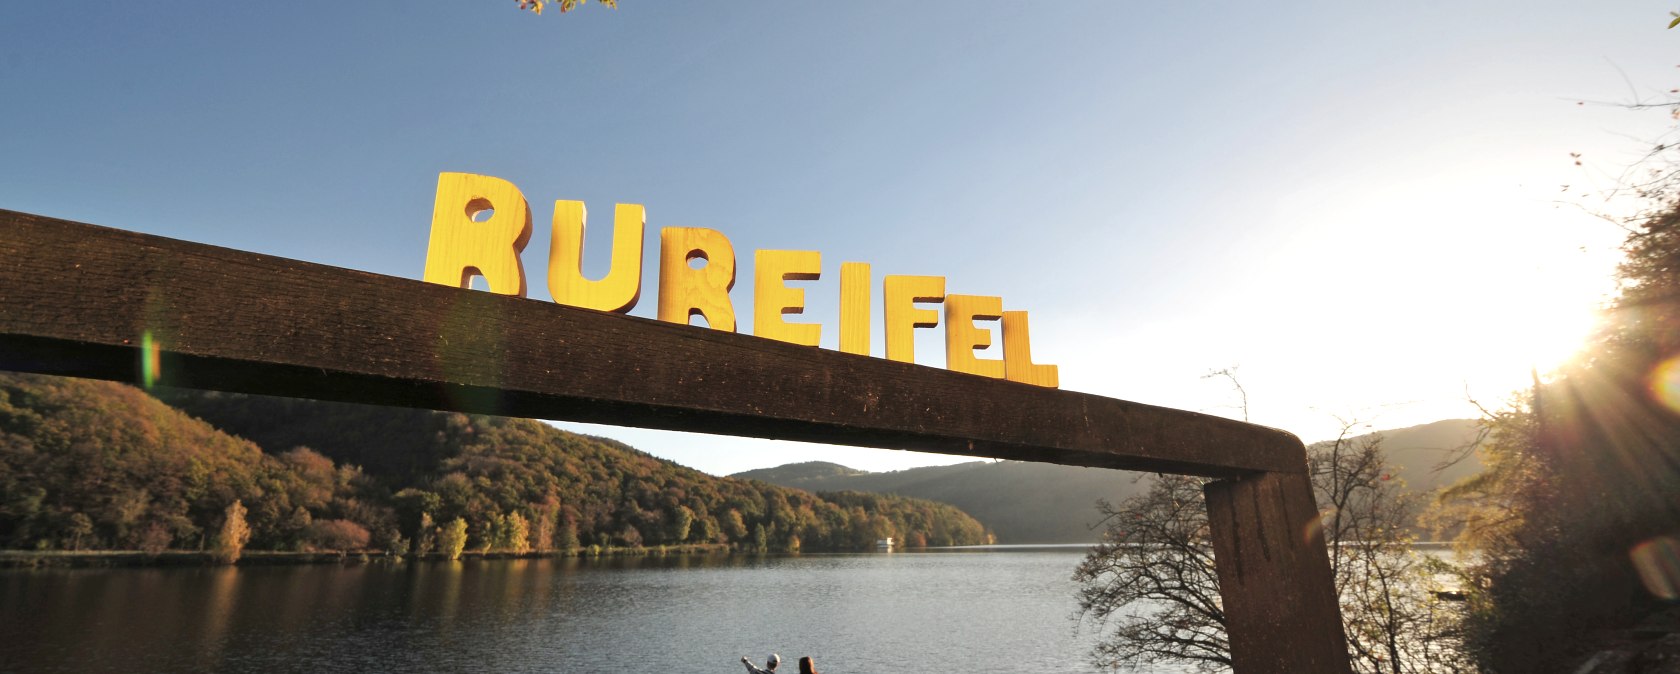 Herzlich willkommen in der Rureifel, © Rureifel-Tourismus e.V.